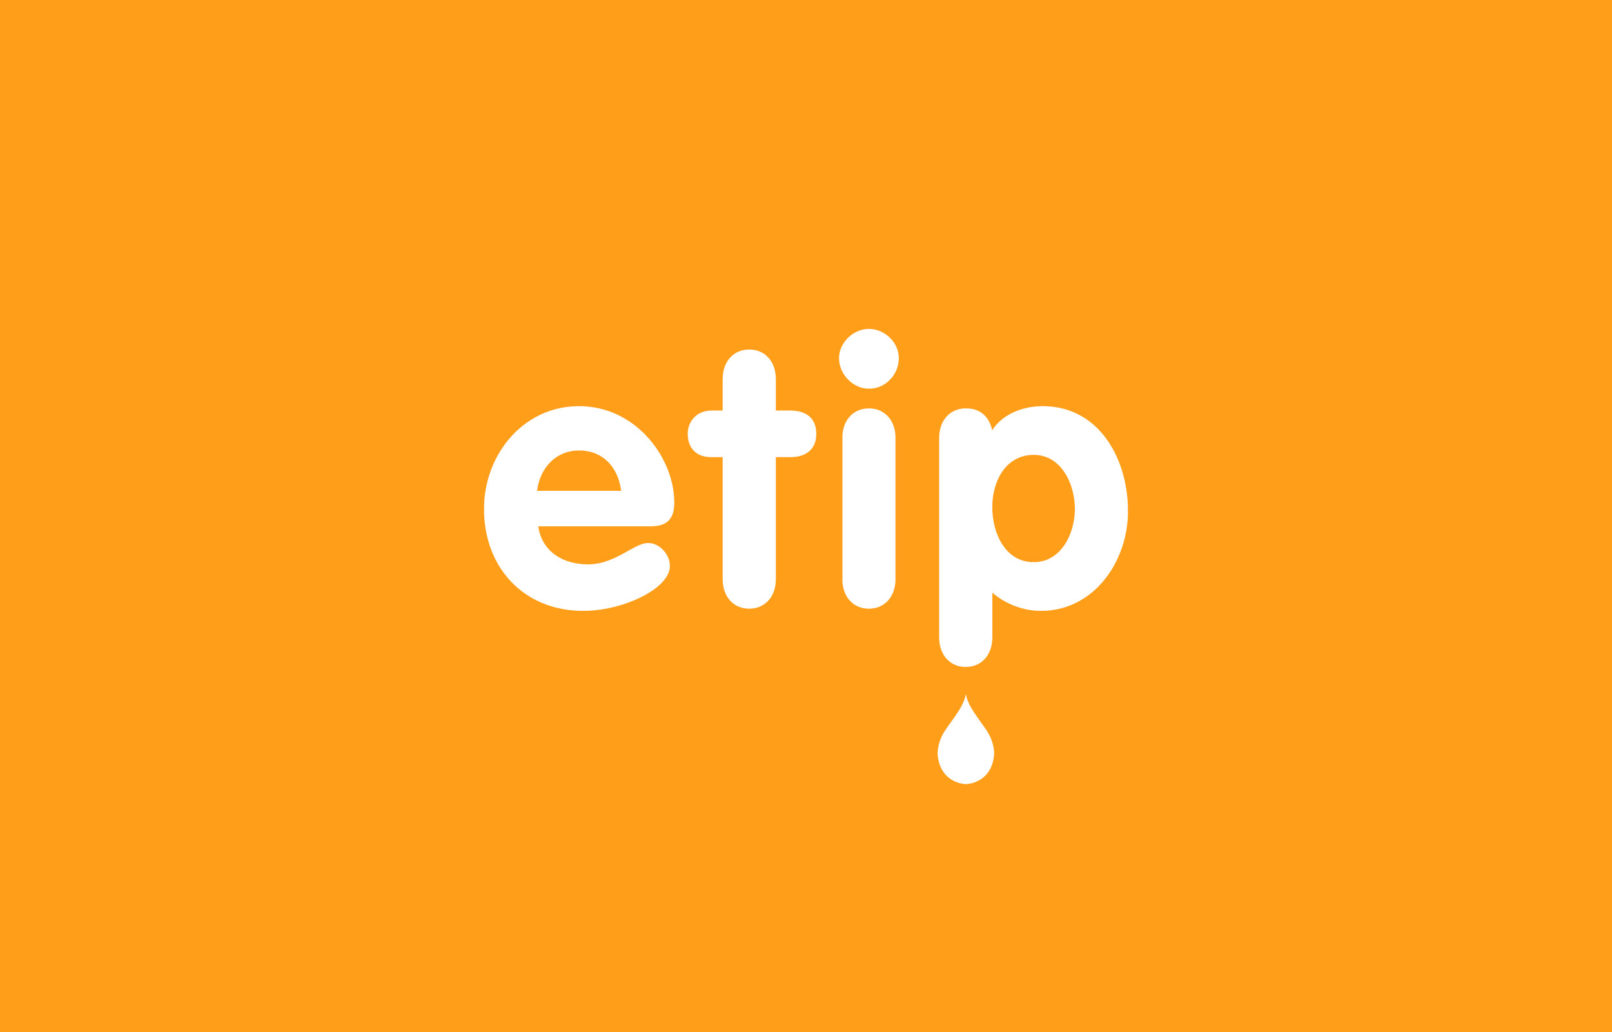 ETIP logo design